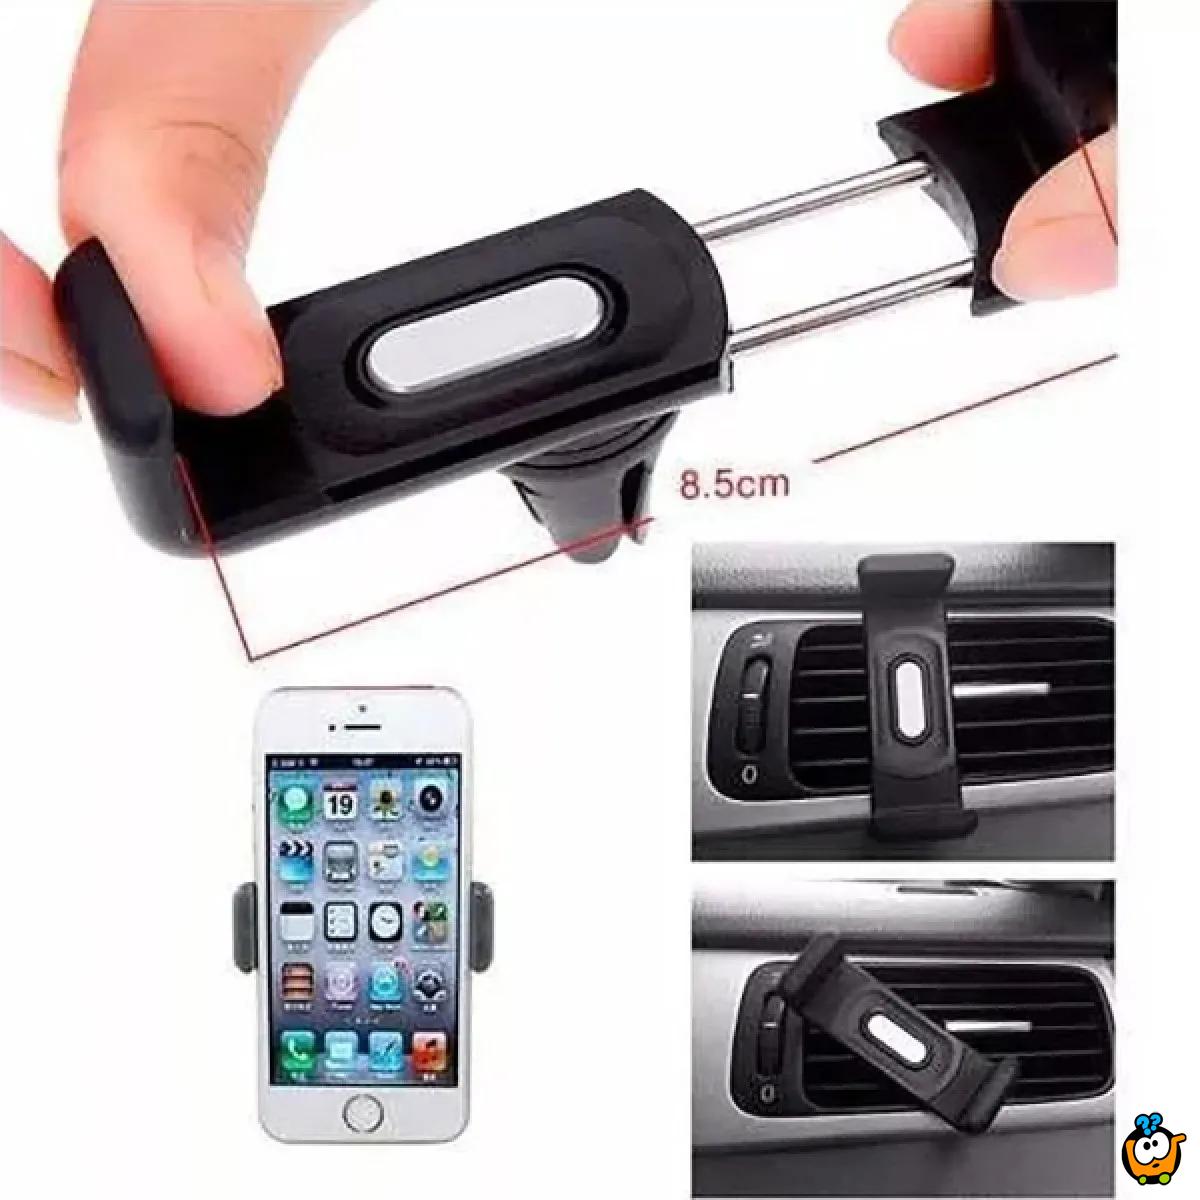 Car phone holder - Univerzalni držač telefona u kolima